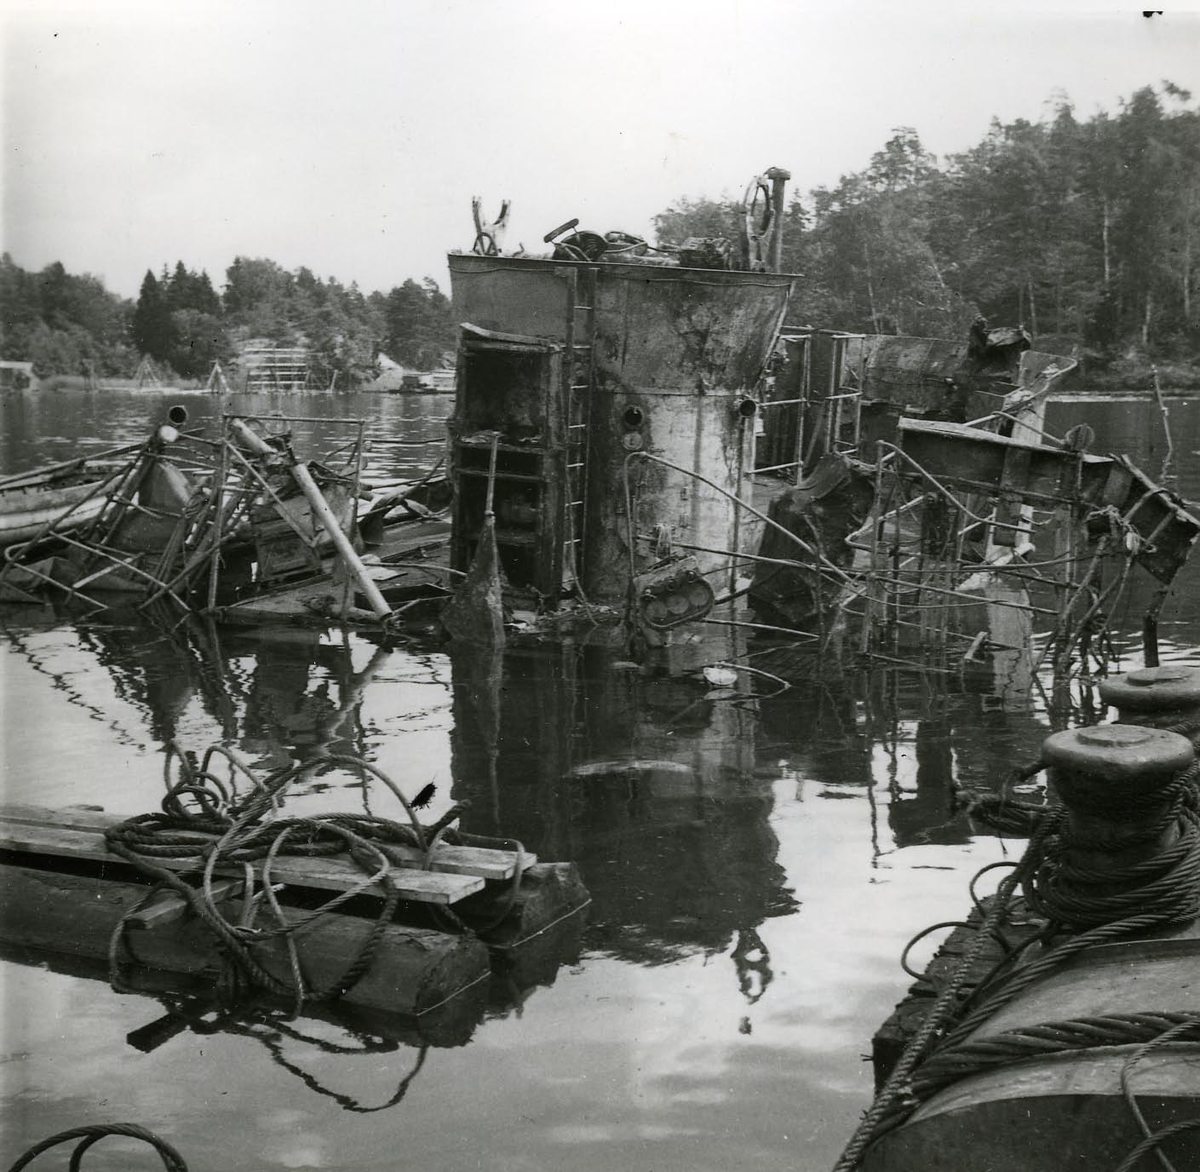 Vraket av den vid explosionen sjunkna jagaren Göteborg. Foto Hårsfjärden sept.nov.1941.
Jagaren sedemera bärgad och reparerad.